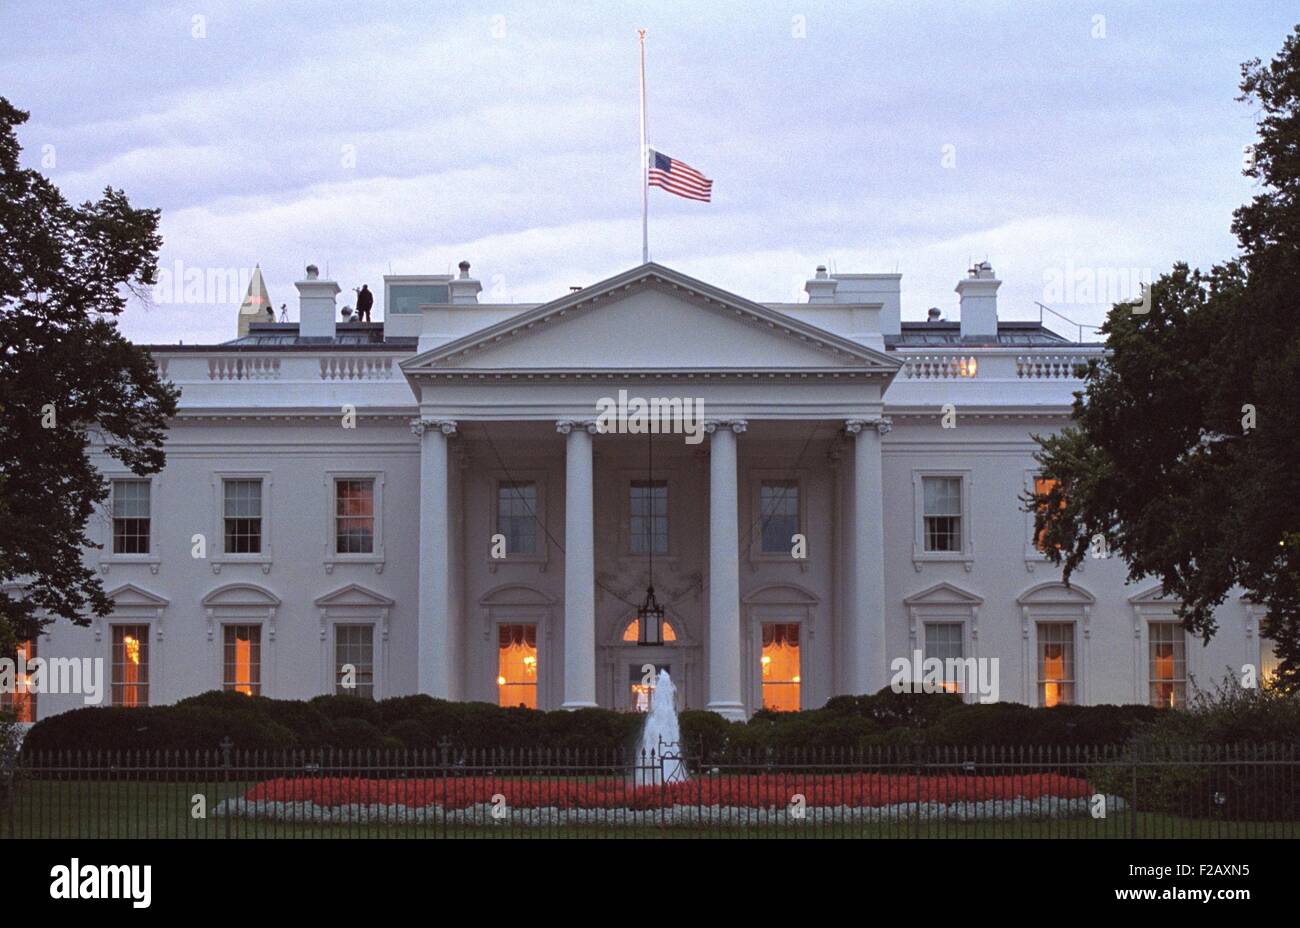 Drapeau américain vole à plus de la moitié du personnel de la Maison Blanche au lever du soleil le vendredi, Septembre 14, 2001. 3 jours après les attaques terroristes du 11 septembre, l'agression contre les membres de l'équipe sont affichés sur le toit. (BSLOC 2015 2 148) Banque D'Images